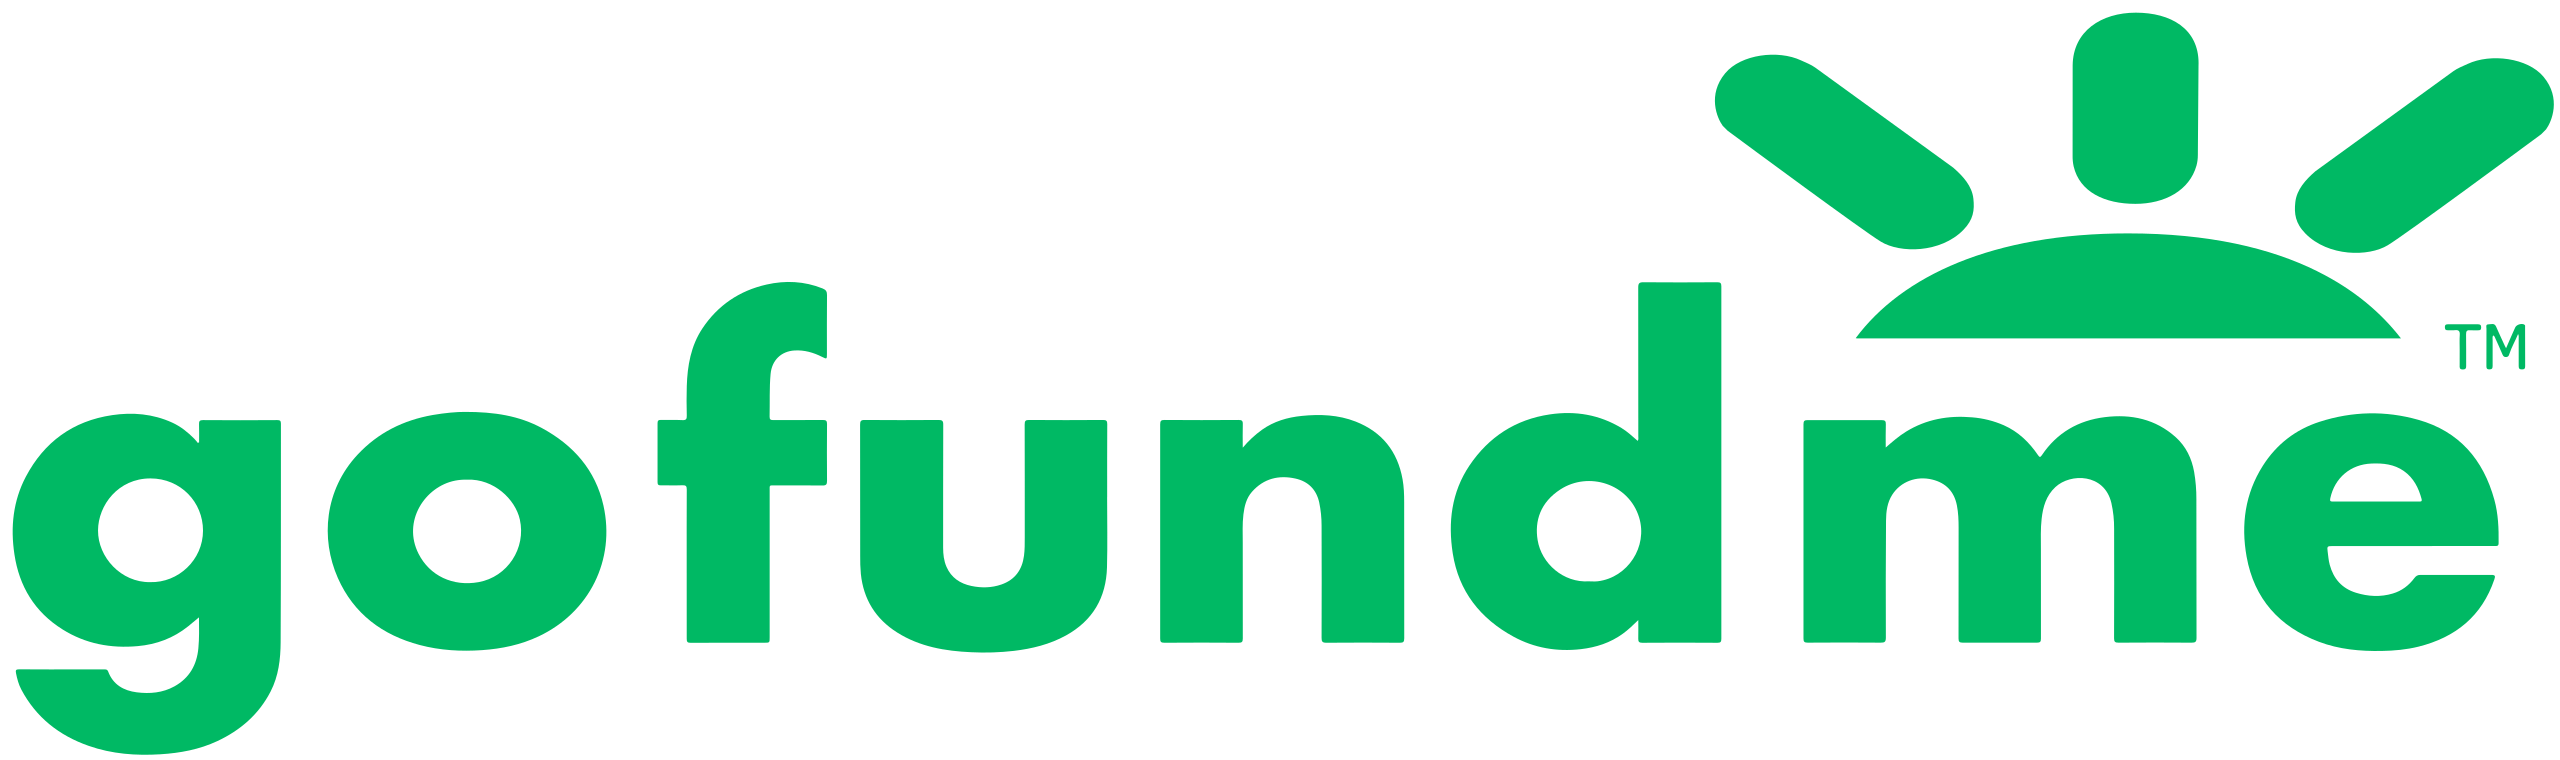 File Gofundme Logo Svg Wikimedia Commons